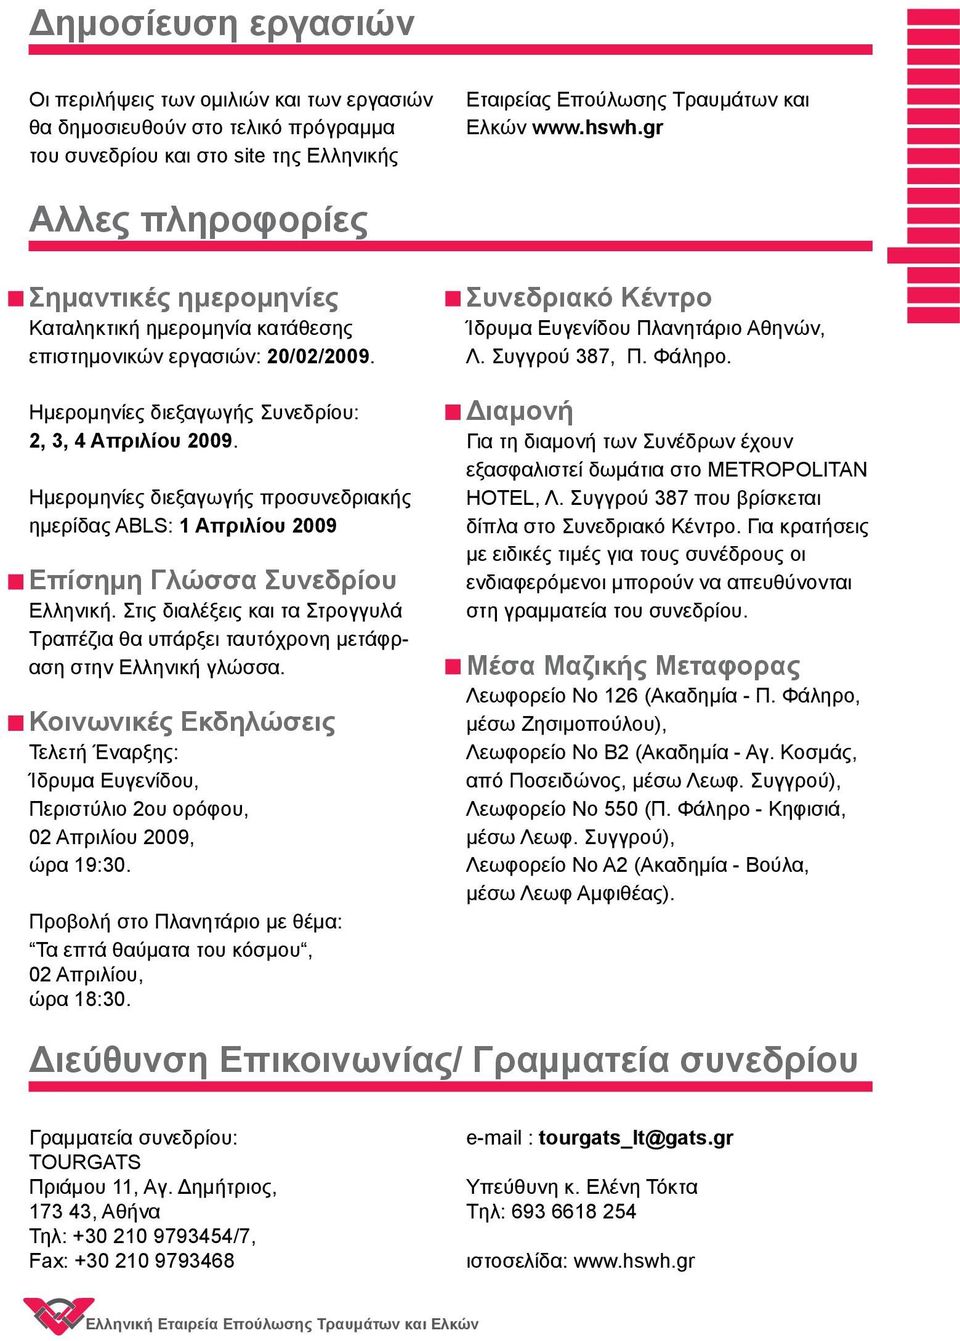 Ημερομηνίες διεξαγωγής προσυνεδριακής ημερίδας ΑΒLS: 1 Aπριλίου 2009 Επίσημη Γλώσσα Συνεδρίου Ελληνική. Στις διαλέξεις και τα Στρογγυλά Τραπέζια θα υπάρξει ταυ τό χρονη μετάφραση στην Ελληνική γλώσσα.